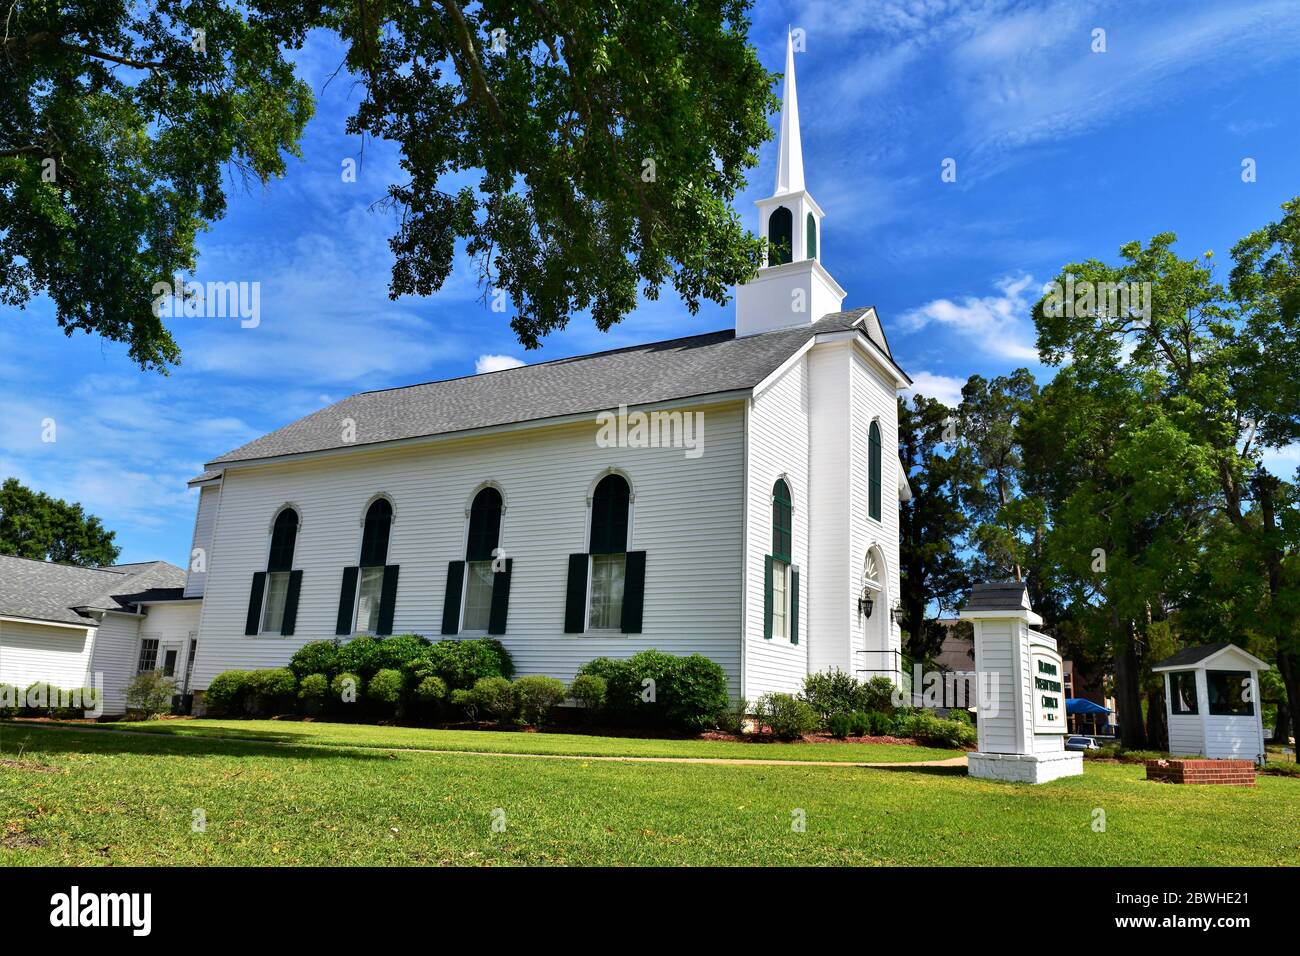 Die Presbyterianische Kirche Von Brandon. Stockfoto